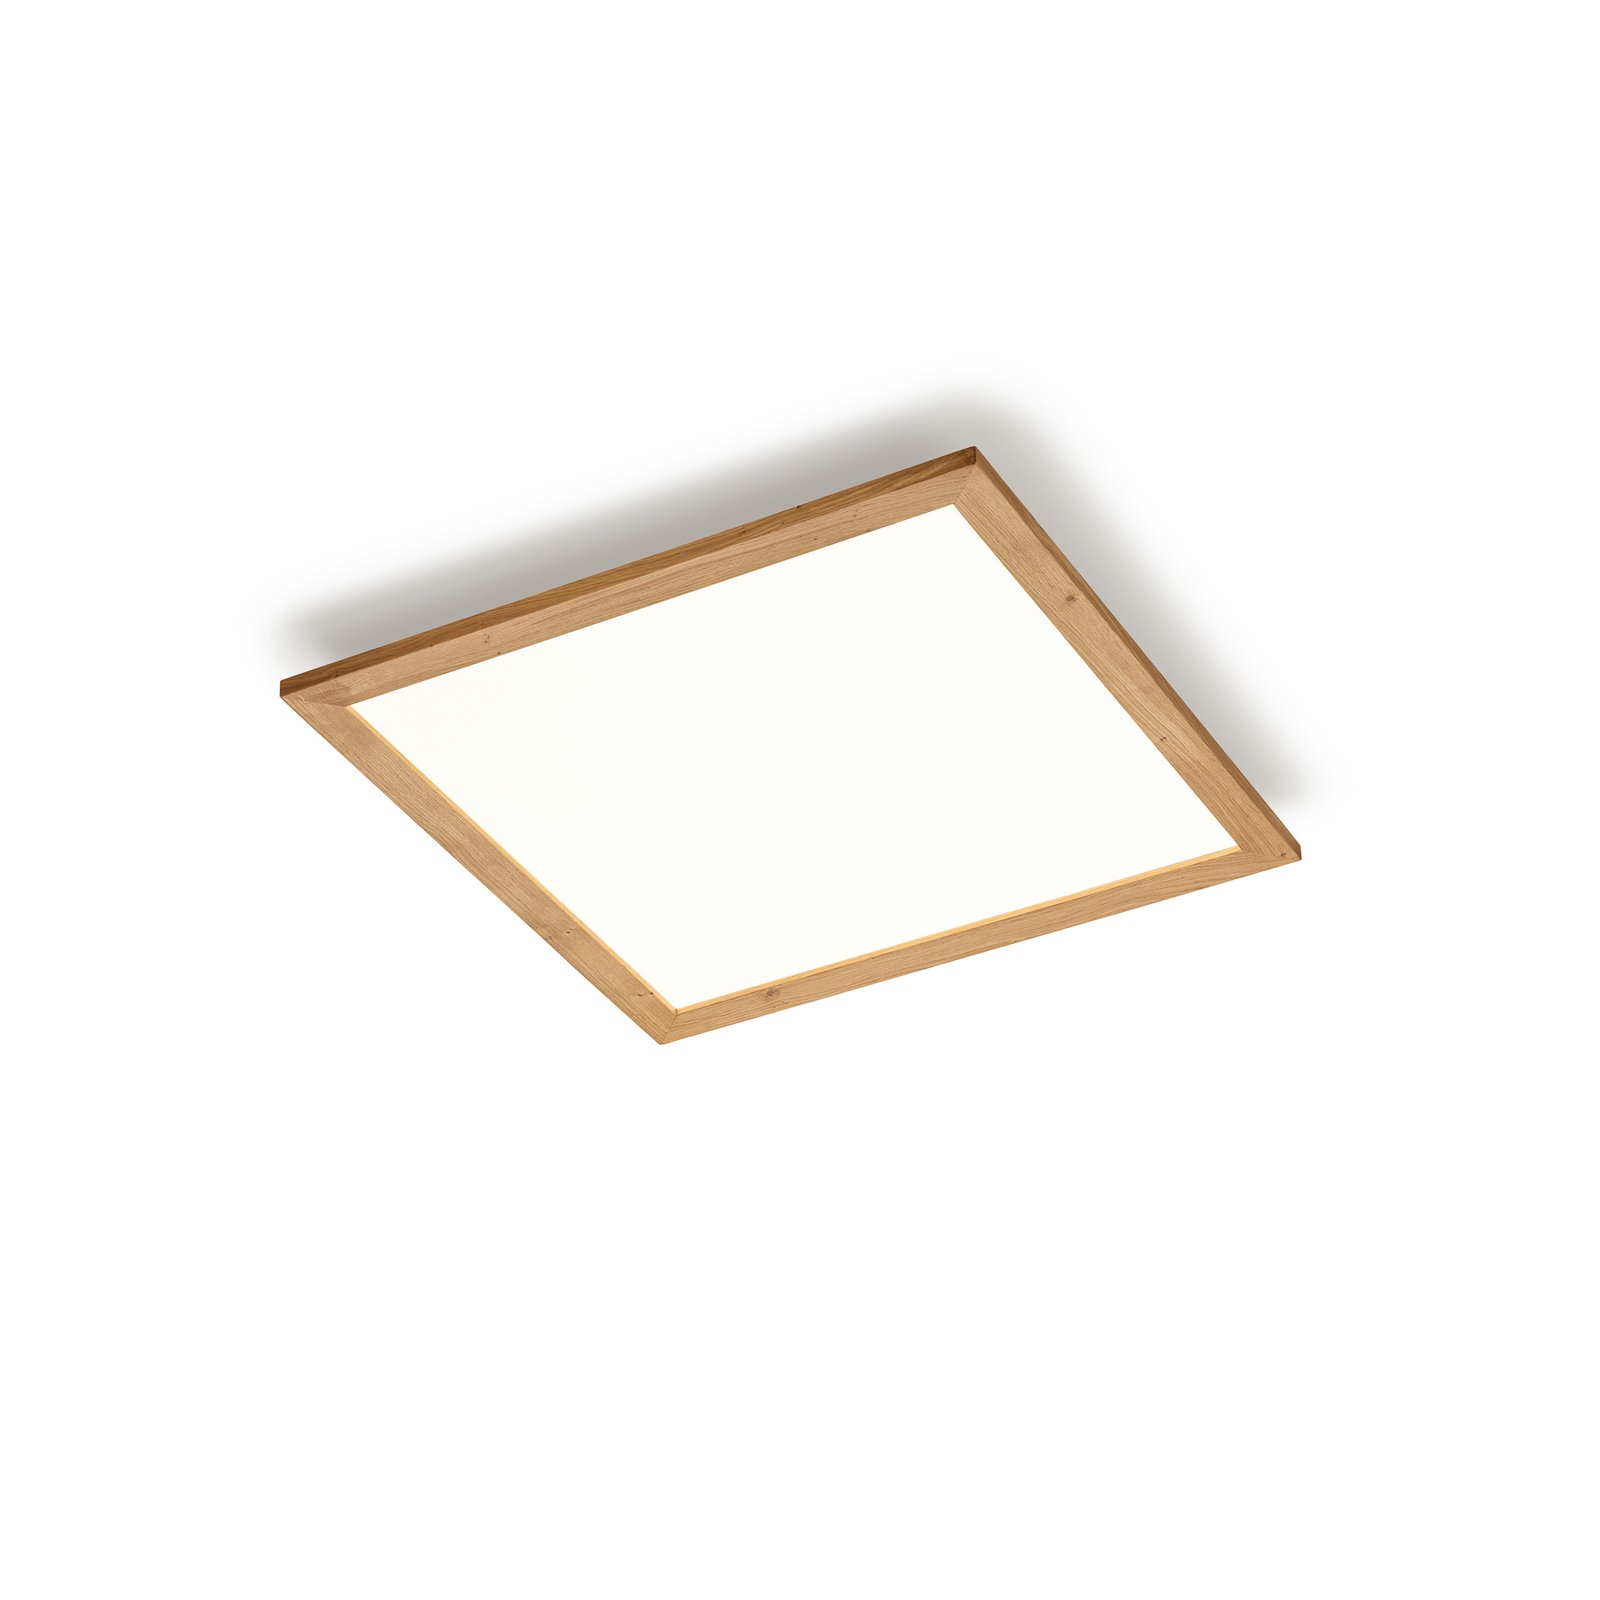 Quitani Aurinor panel LED, roble natural, 68 cm